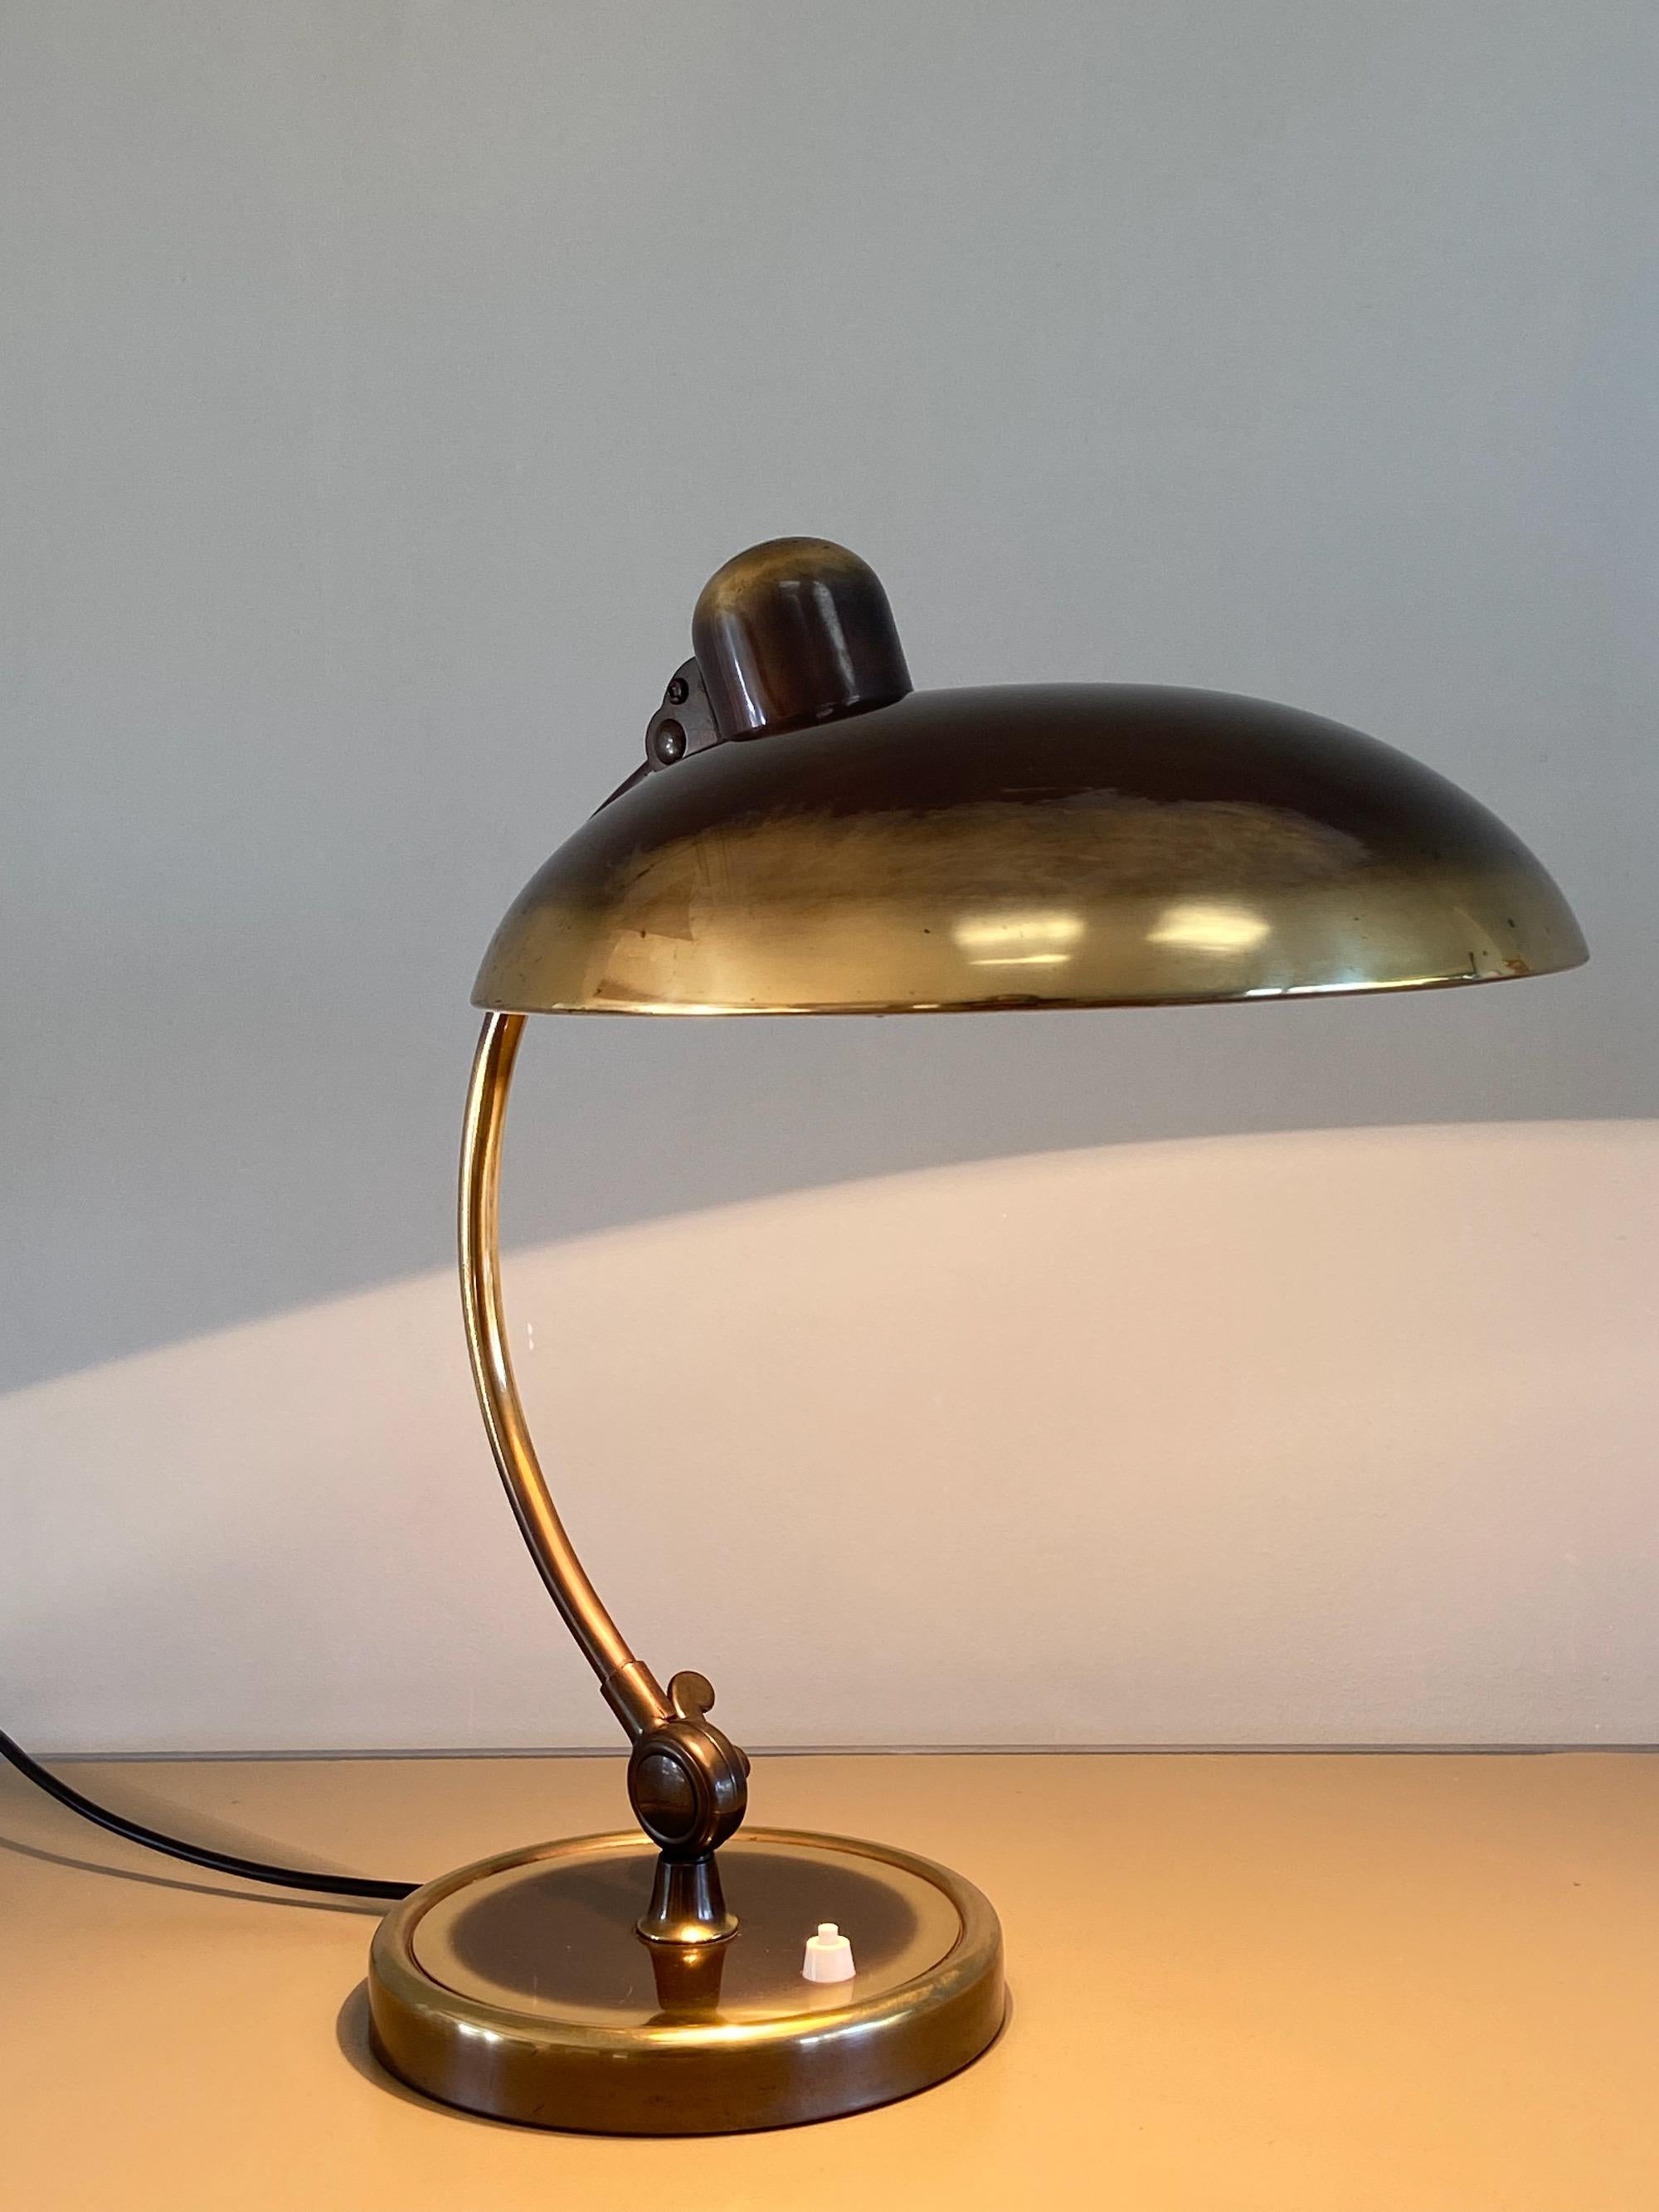 Christian Dell Brass Table Lamp 6631 Desk Lamp by Kaiser Idell Bauhaus, Germany 4